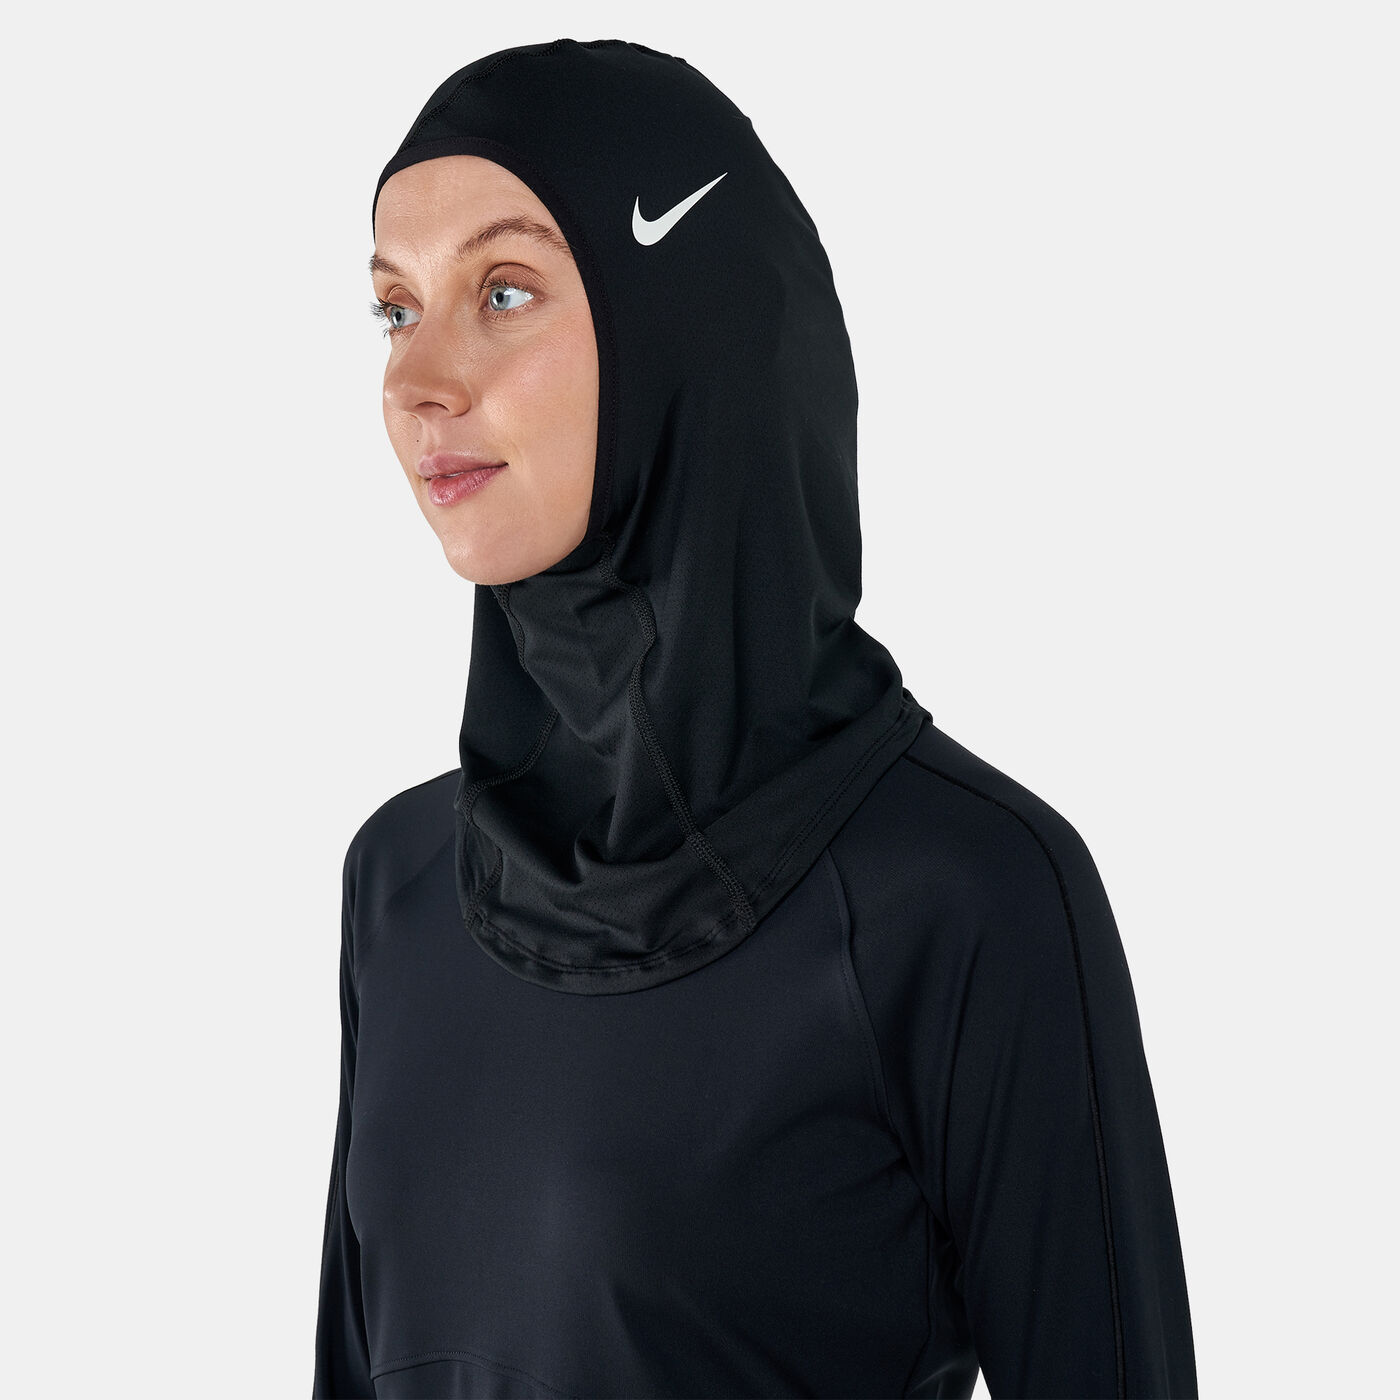 Women's Pro Sports Hijab